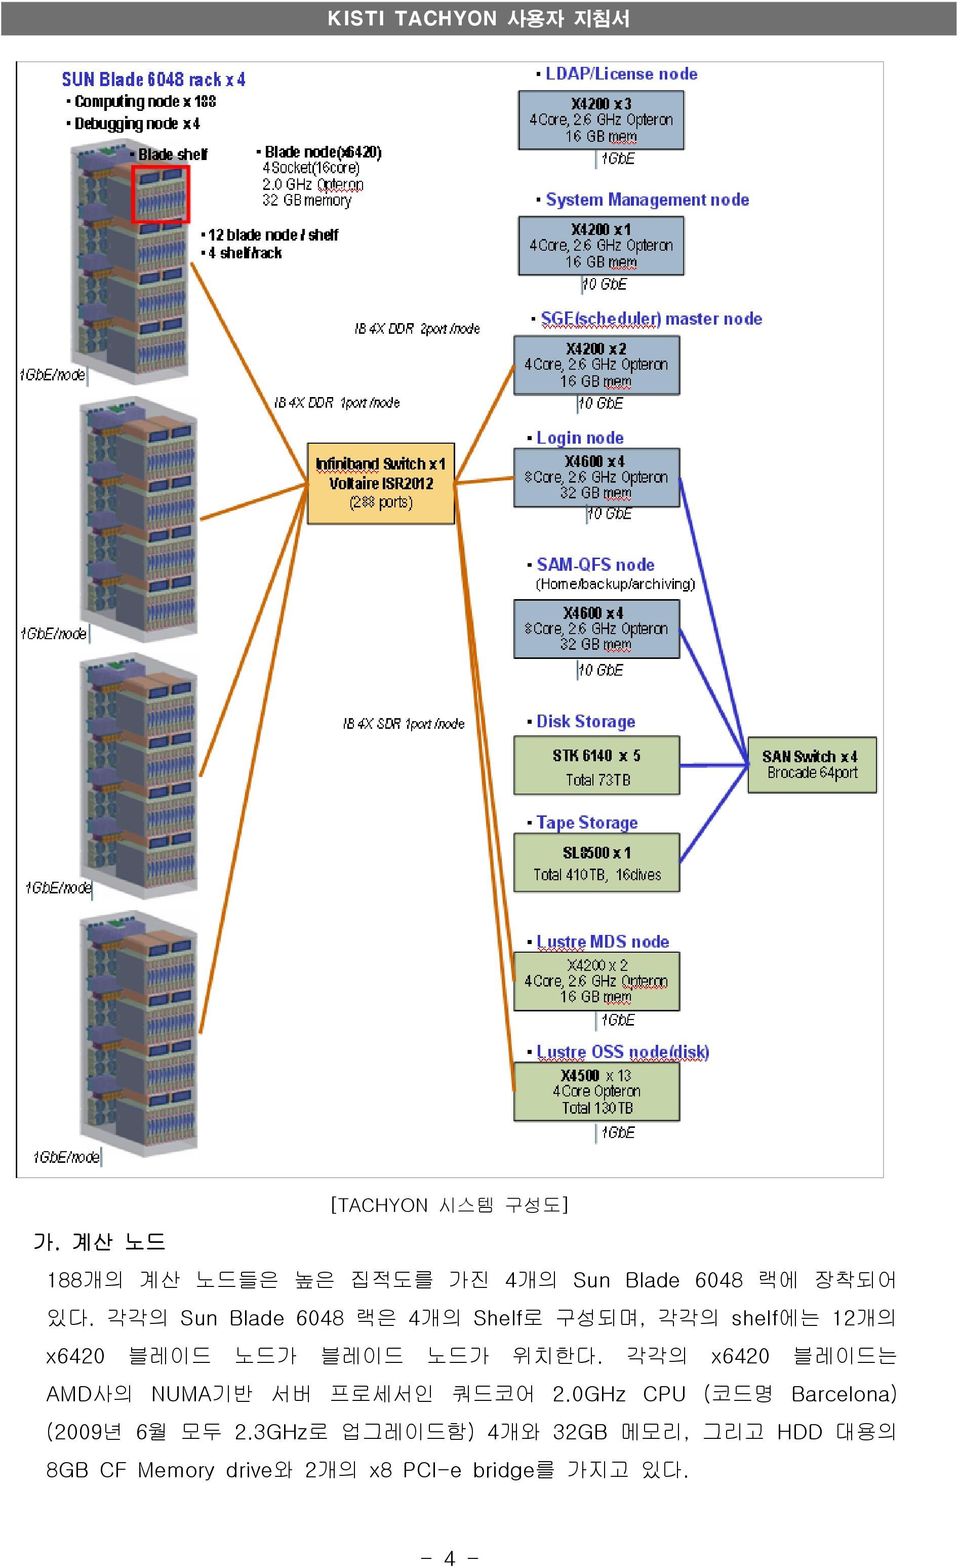 각각의 x6420 블레이드는 AMD사의 NUMA기반 서버 프로세서인 쿼드코어 2.0GHz CPU (코드명 Barcelona) (2009년 6월 모두 2.